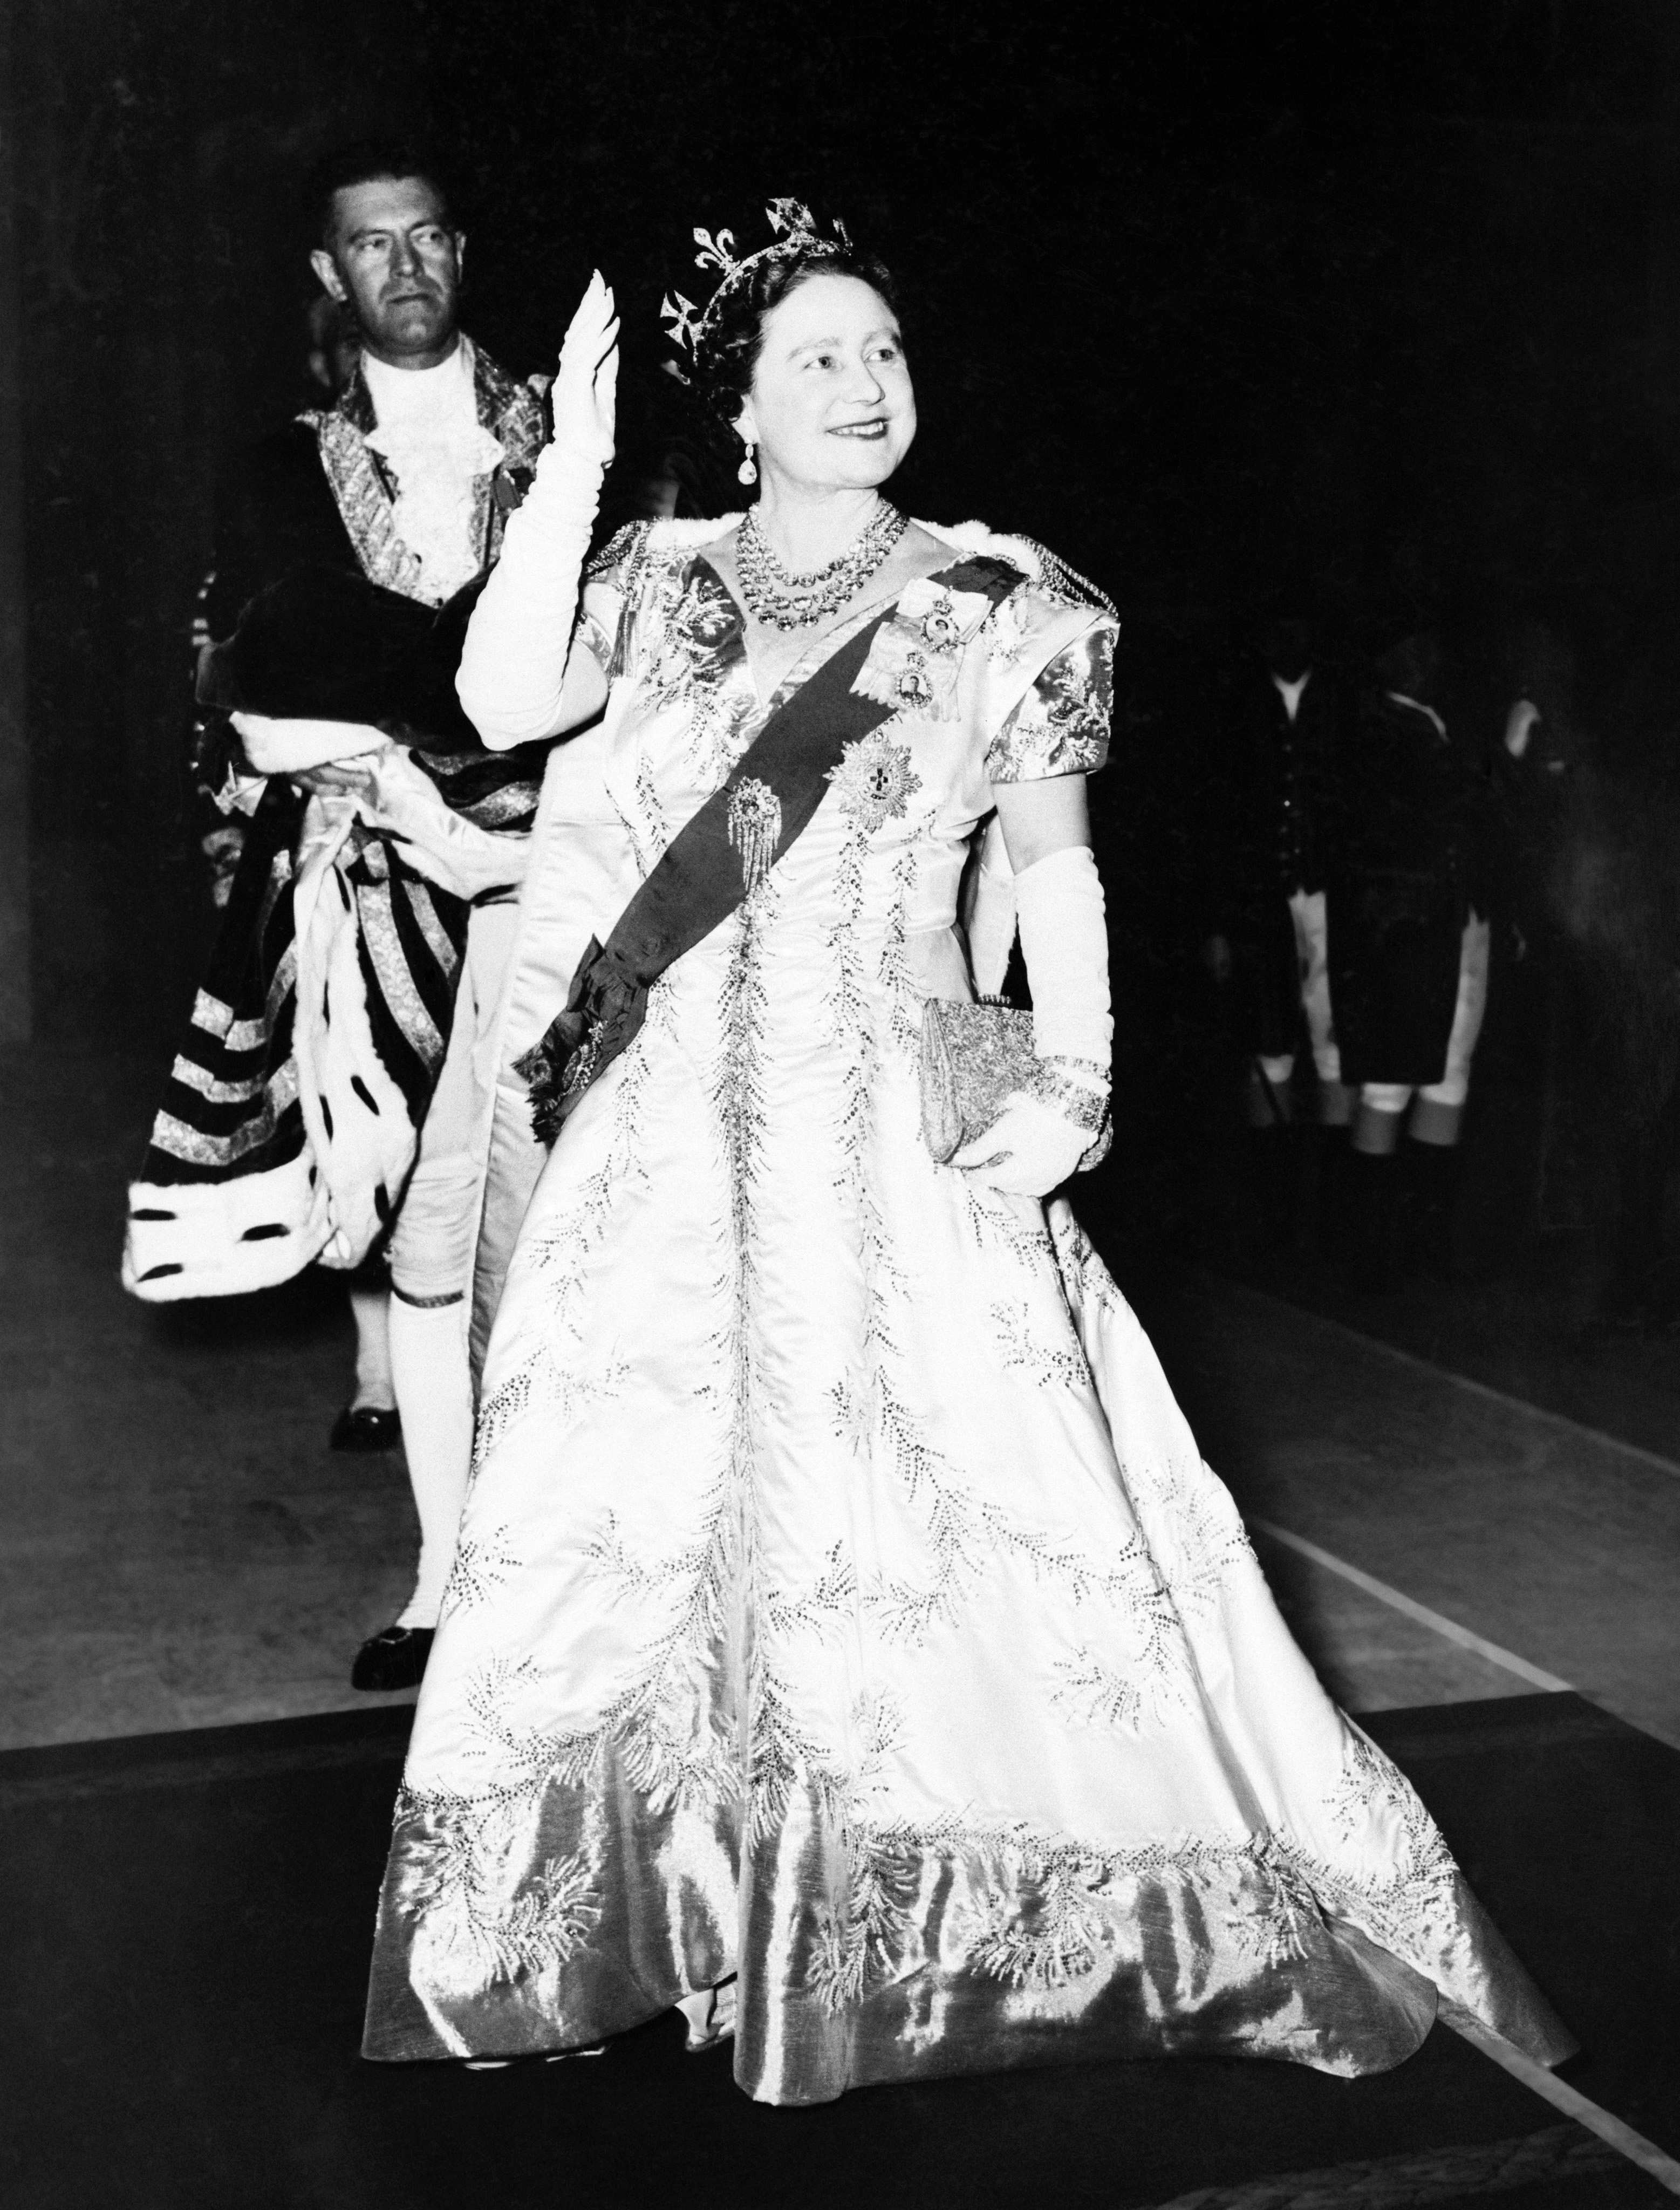 The Queen Mother waves after the Coronation of her daughter Queen Elizabeth II